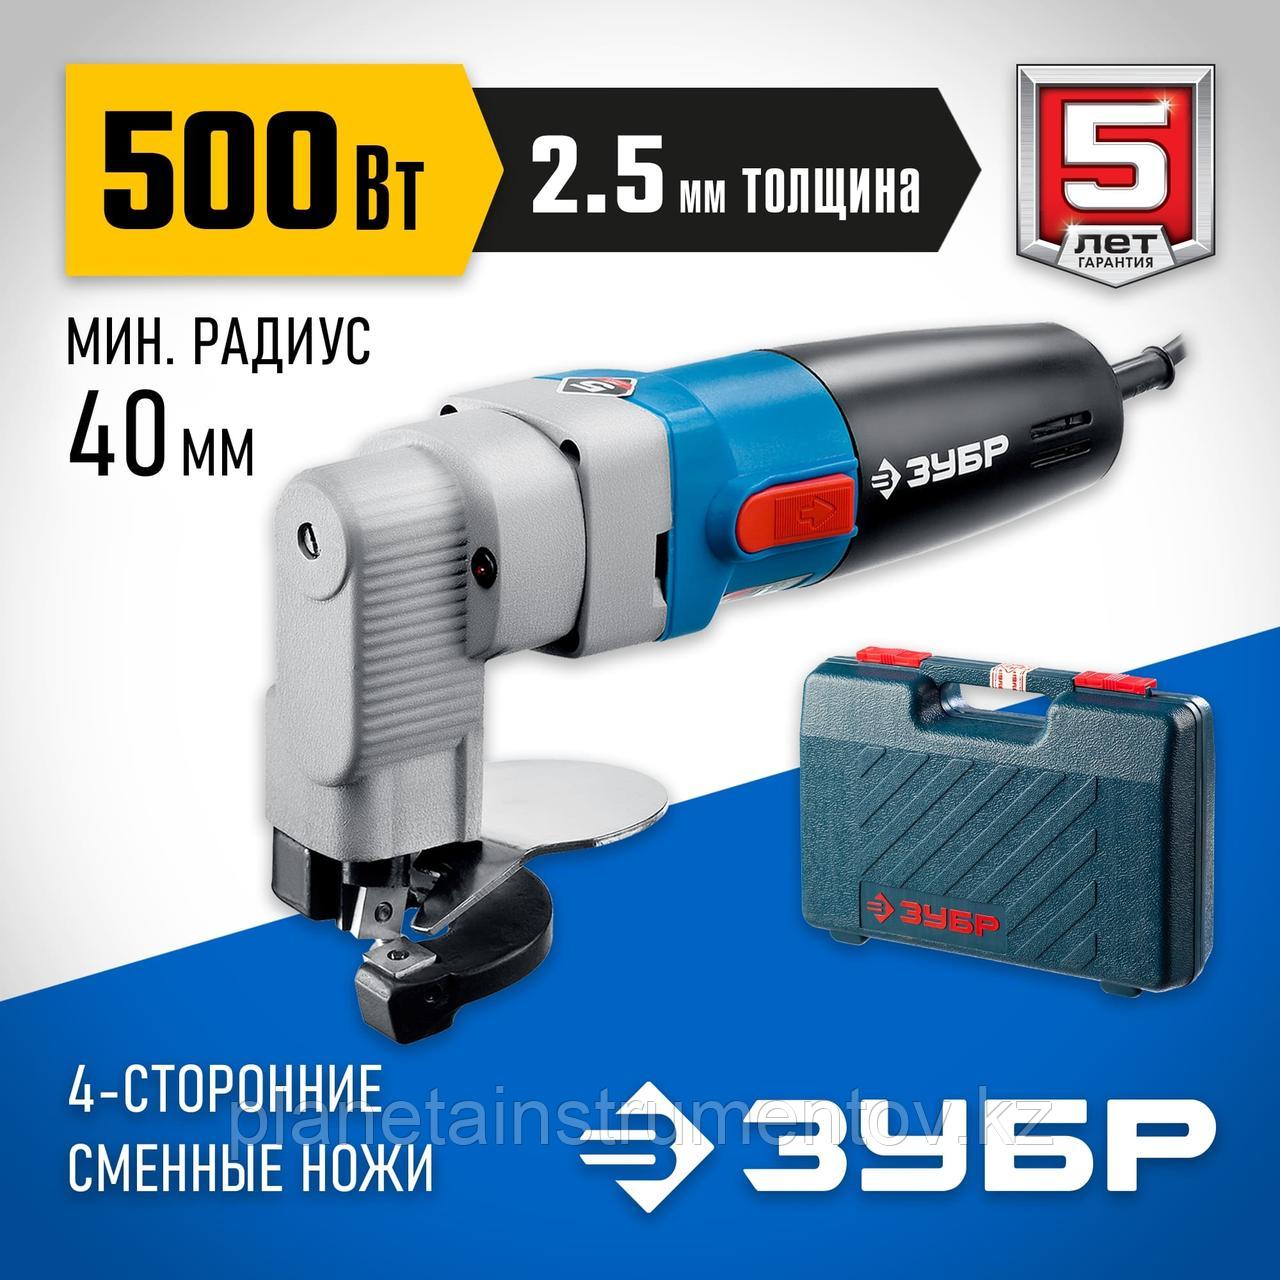 ЗУБР 500 Вт, электрические листовые ножницы, кейс, Профессионал, (ЗНЛ-500)